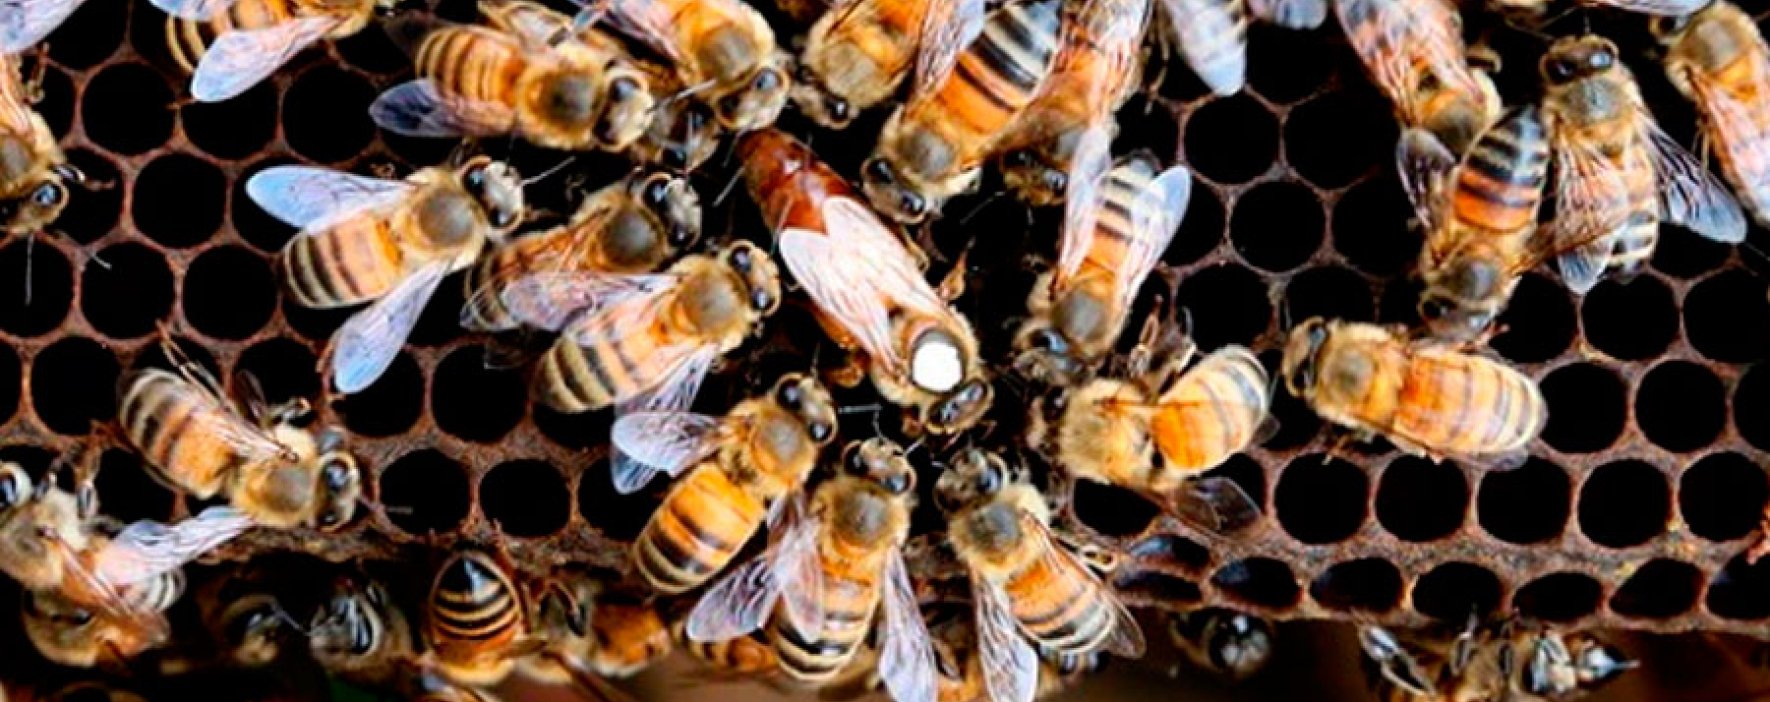 Las abejas endulzan el sector de la bioeconomía en Colombia